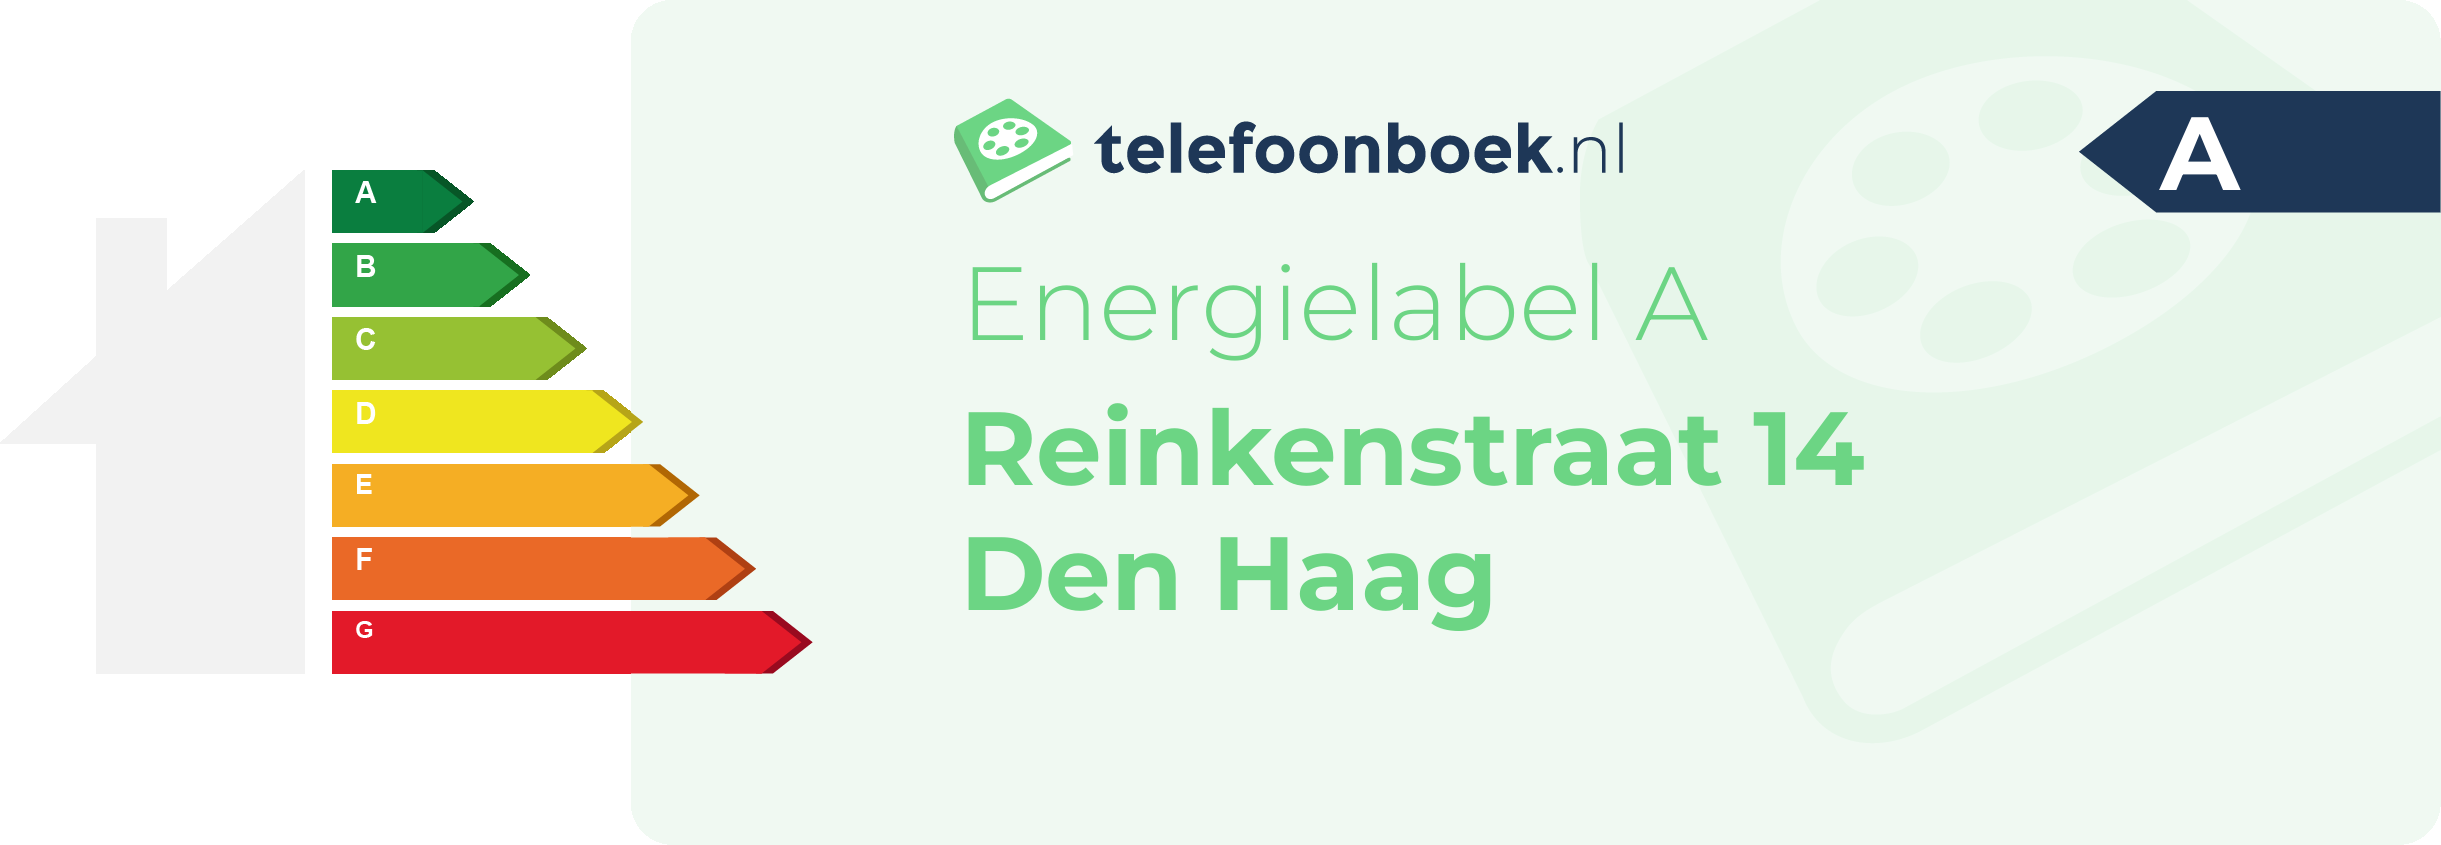 Energielabel Reinkenstraat 14 Den Haag